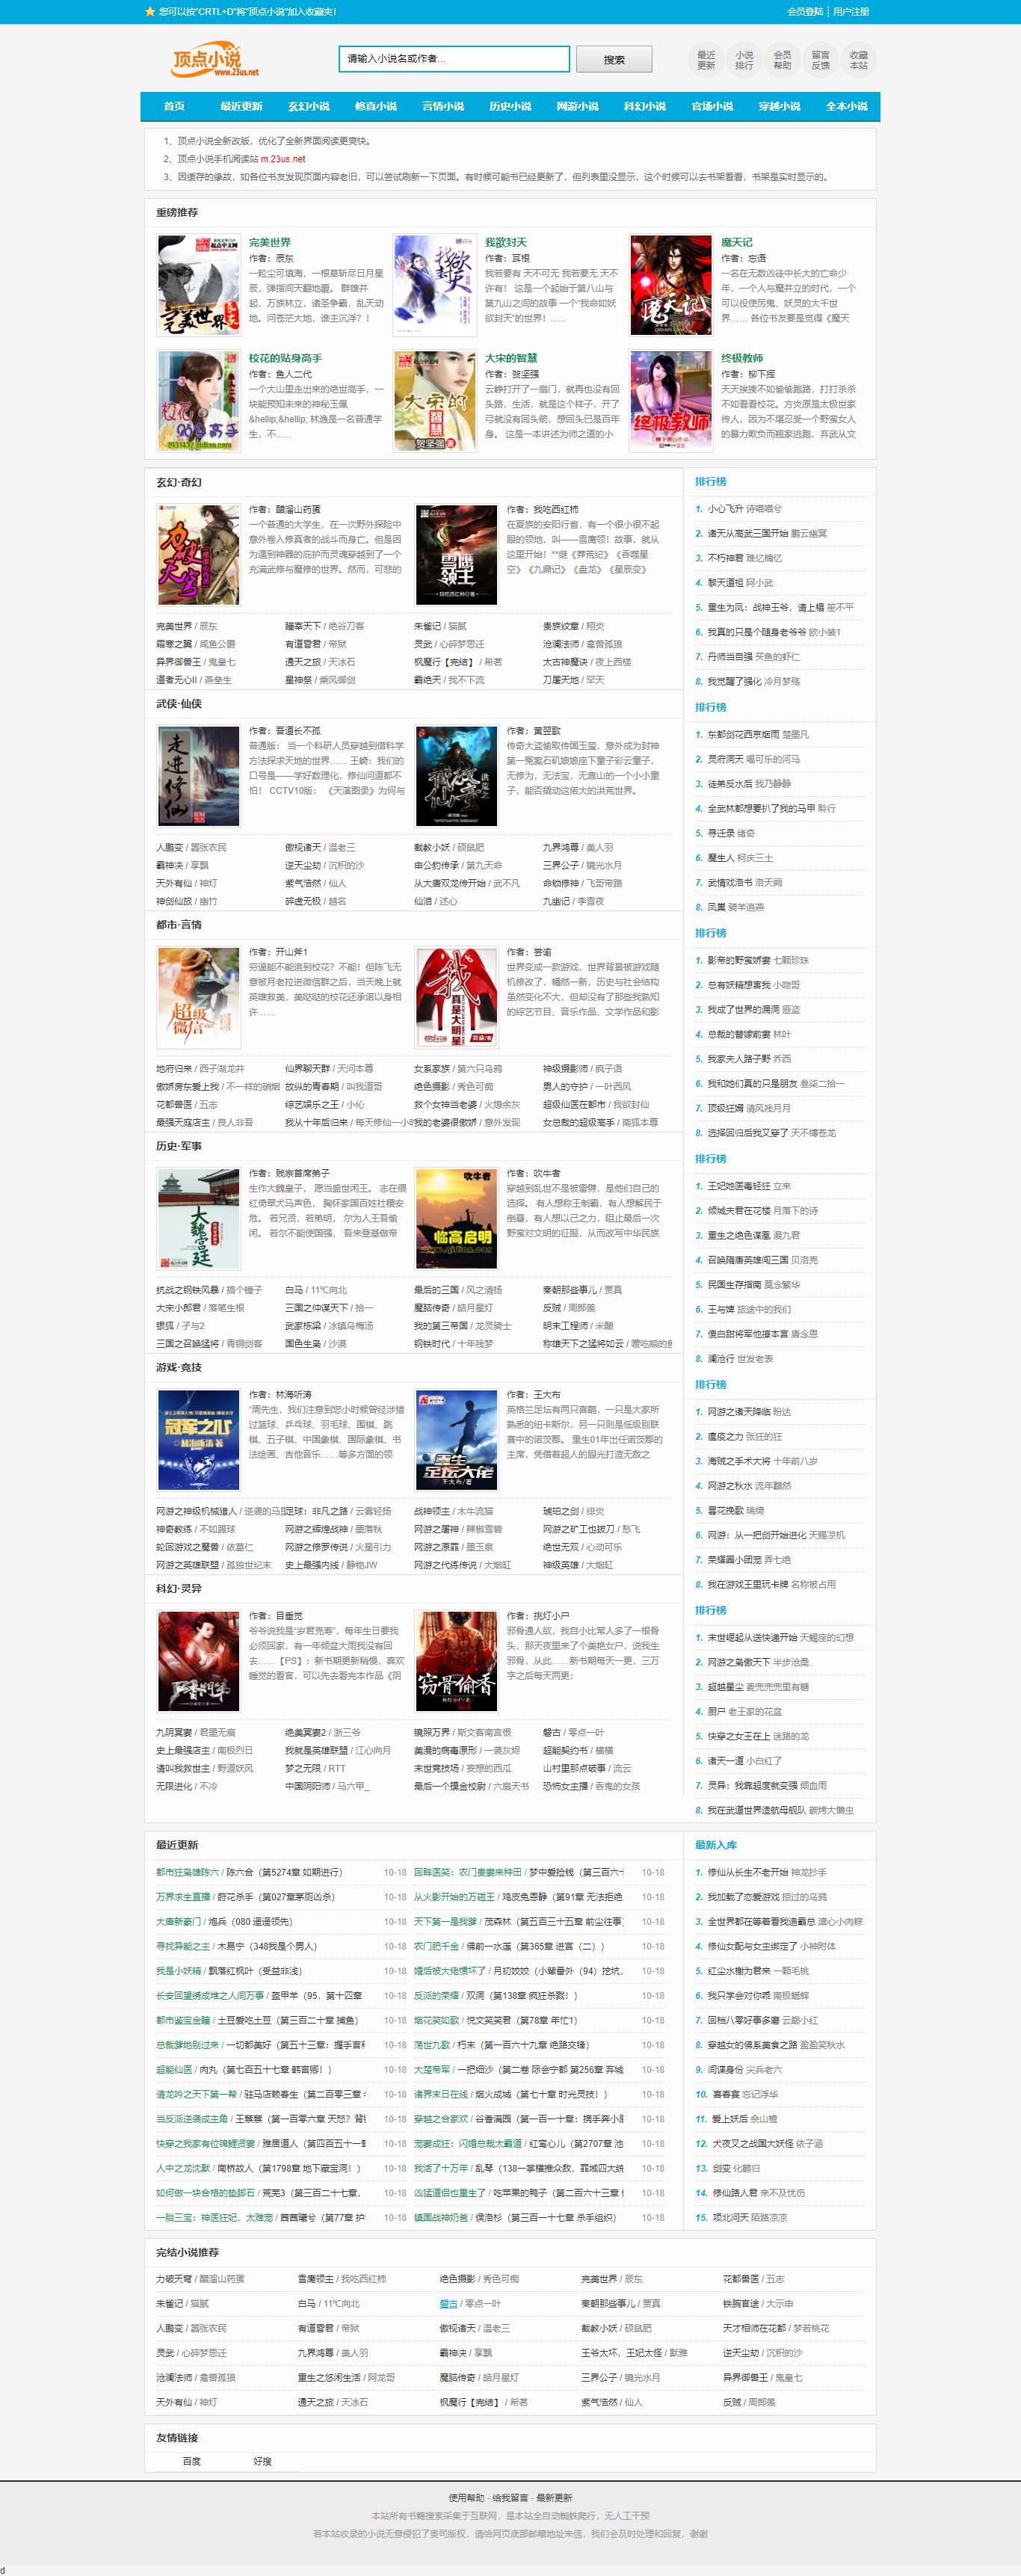 FireShot Capture 142 - gv网站-无弹窗广告小说免费阅读-最好看的小说阅读网 - www.23us.net.png